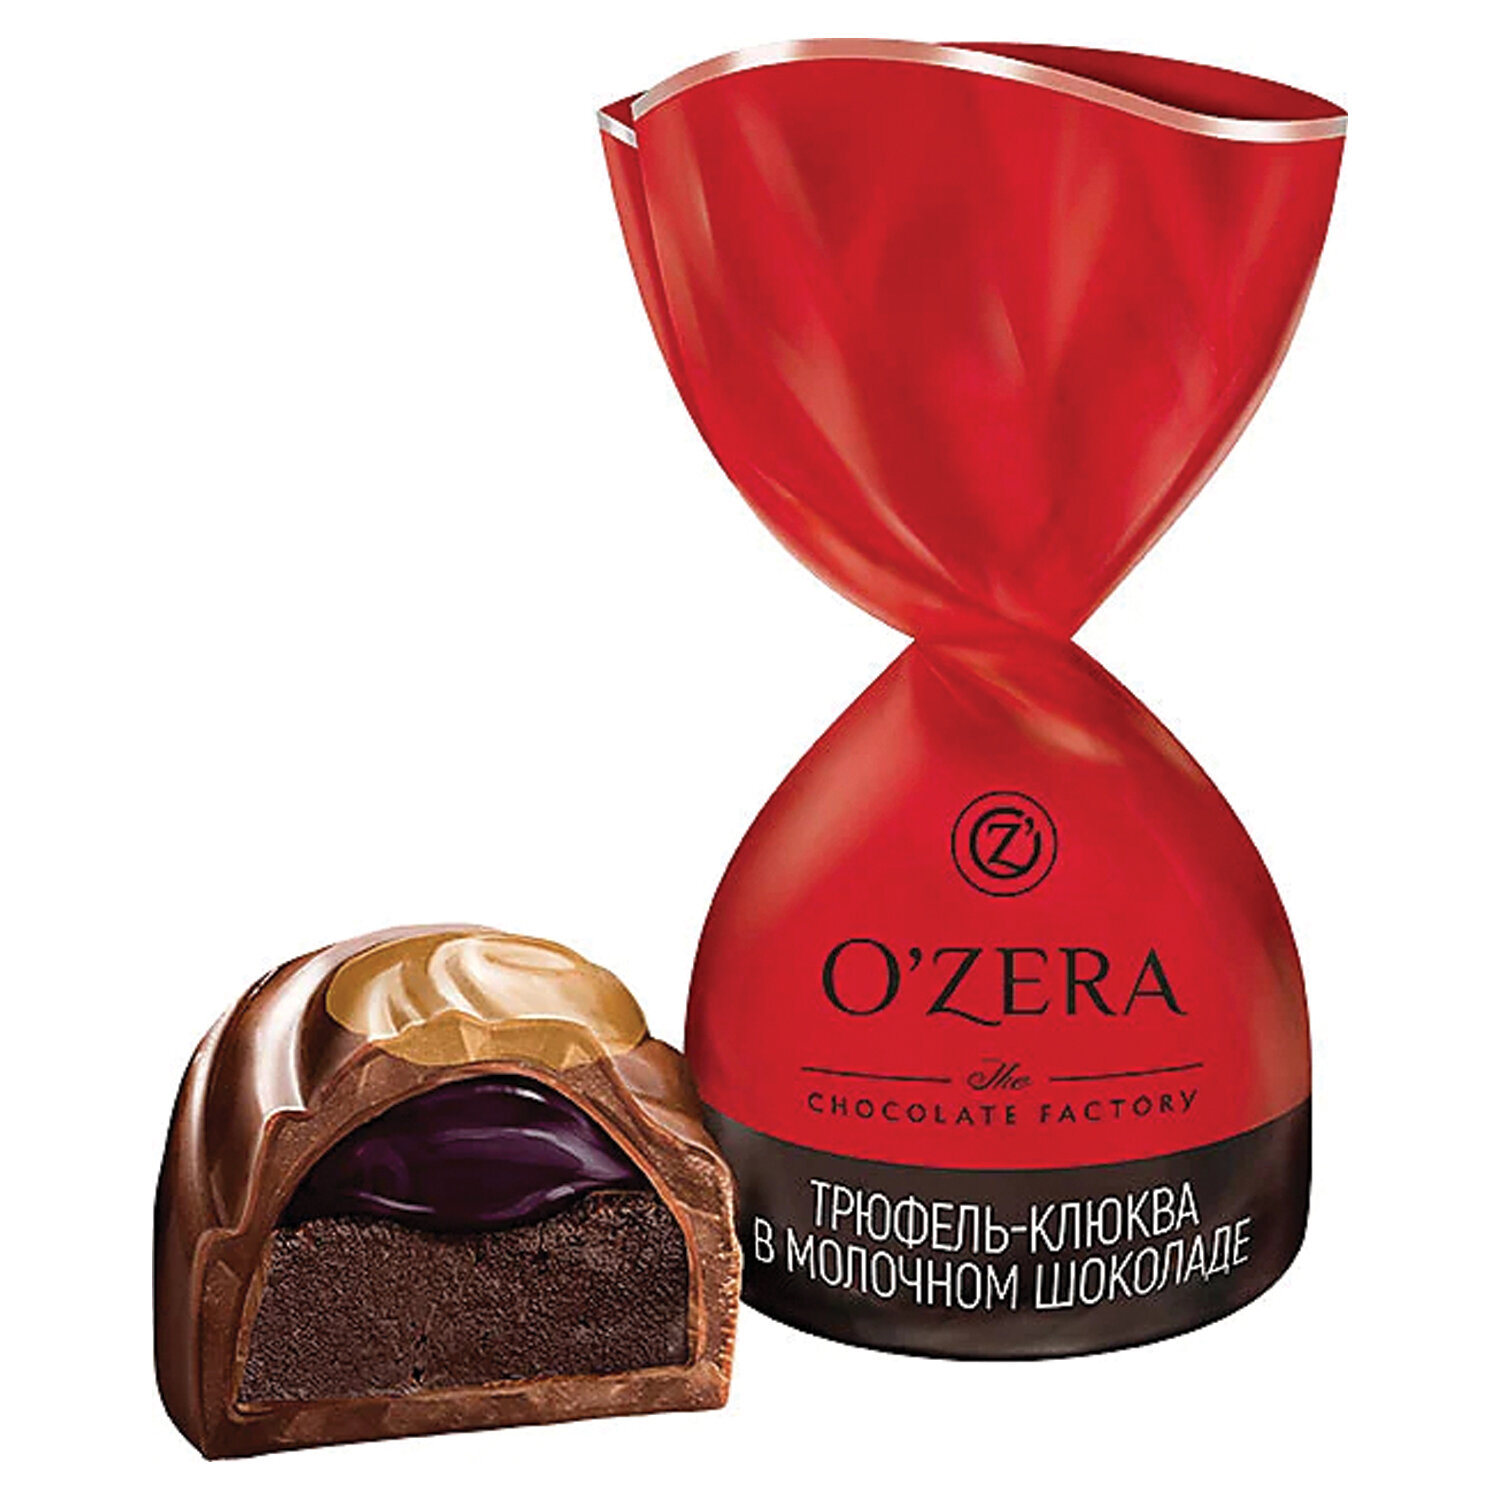 «Ozera», конфеты трюфель - клюква в Молочном шоколаде (упаковка 0,5 кг)